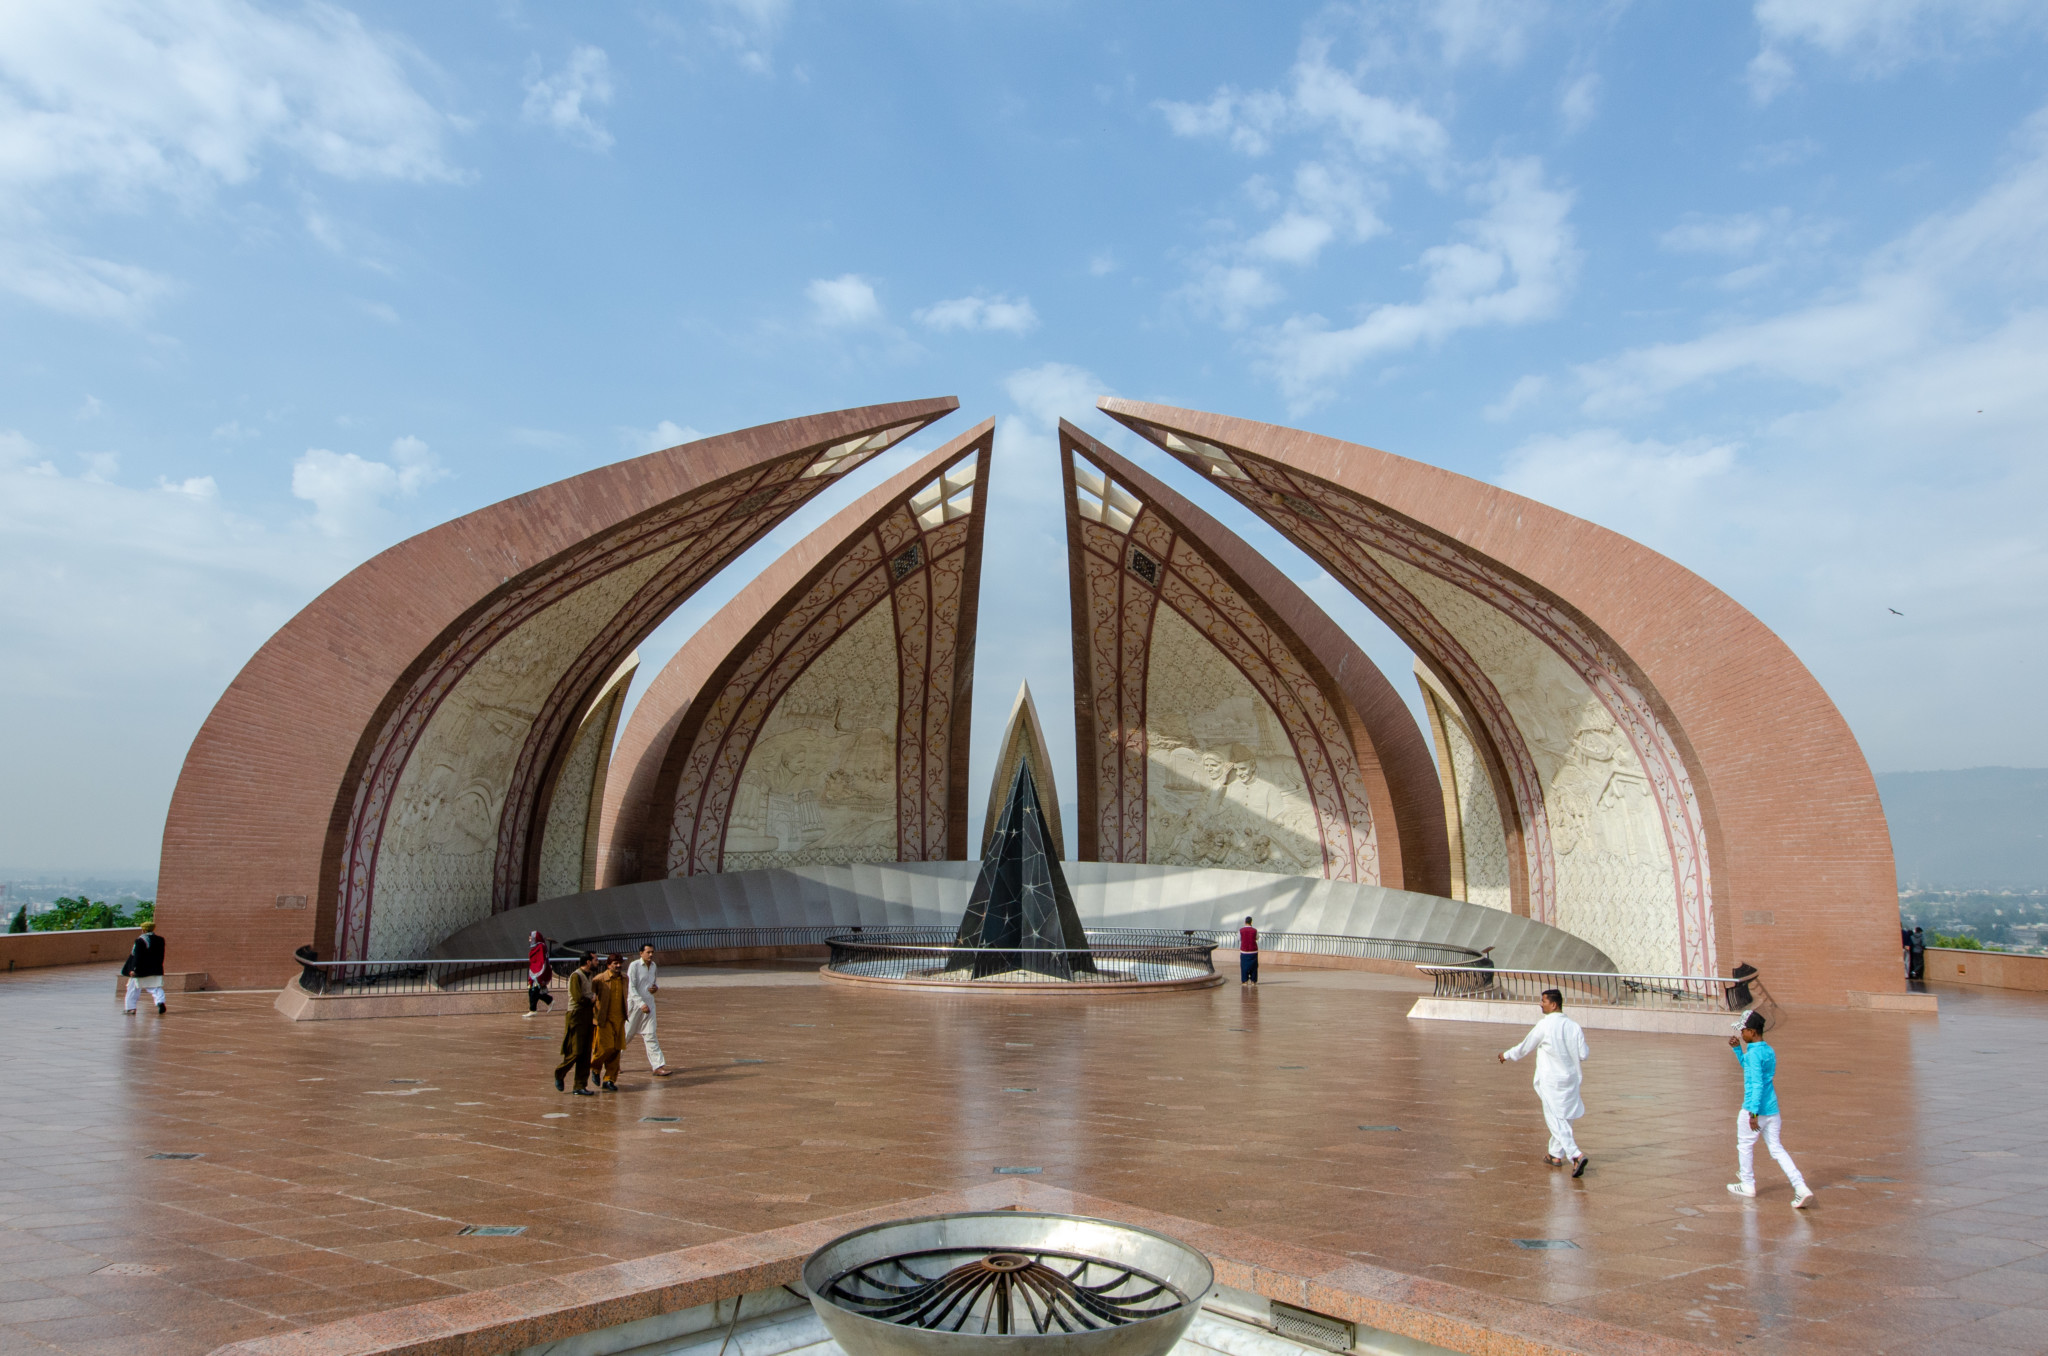 Pakistan Monument in Islamabad Pakistan